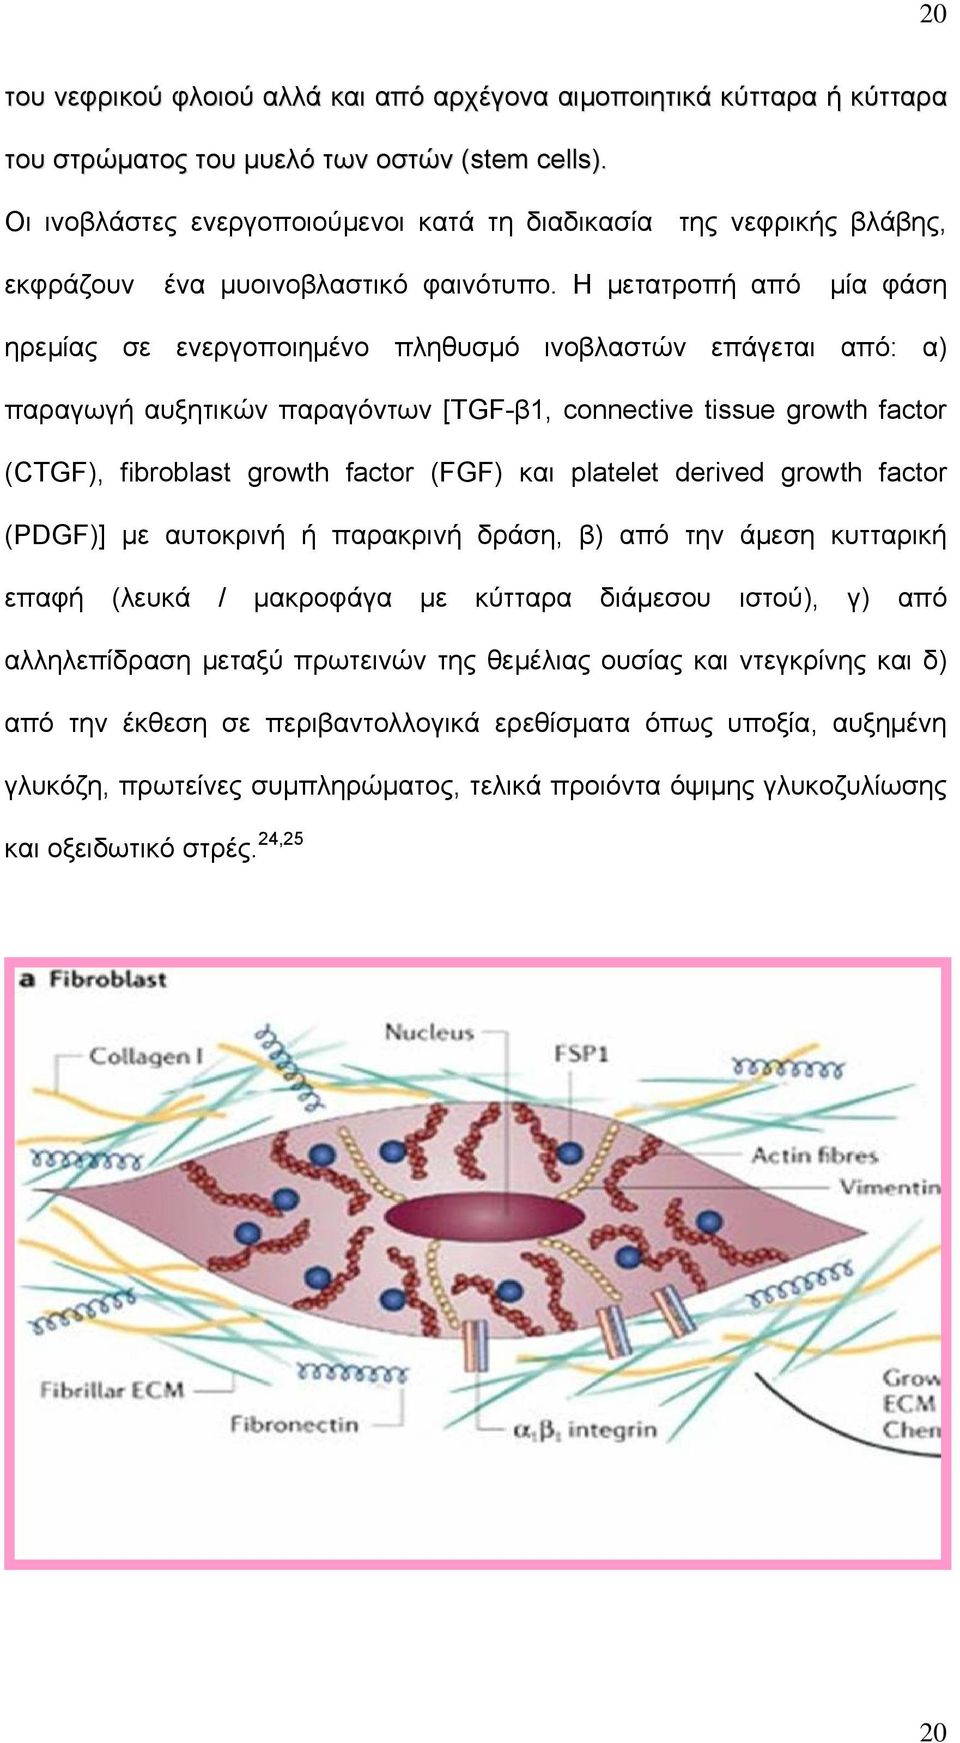 Η μετατροπή από μία φάση ηρεμίας σε ενεργοποιημένο πληθυσμό ινοβλαστών επάγεται από: α) παραγωγή αυξητικών παραγόντων [TGF-β1, connective tissue growth factor (CTGF), fibroblast growth factor (FGF)